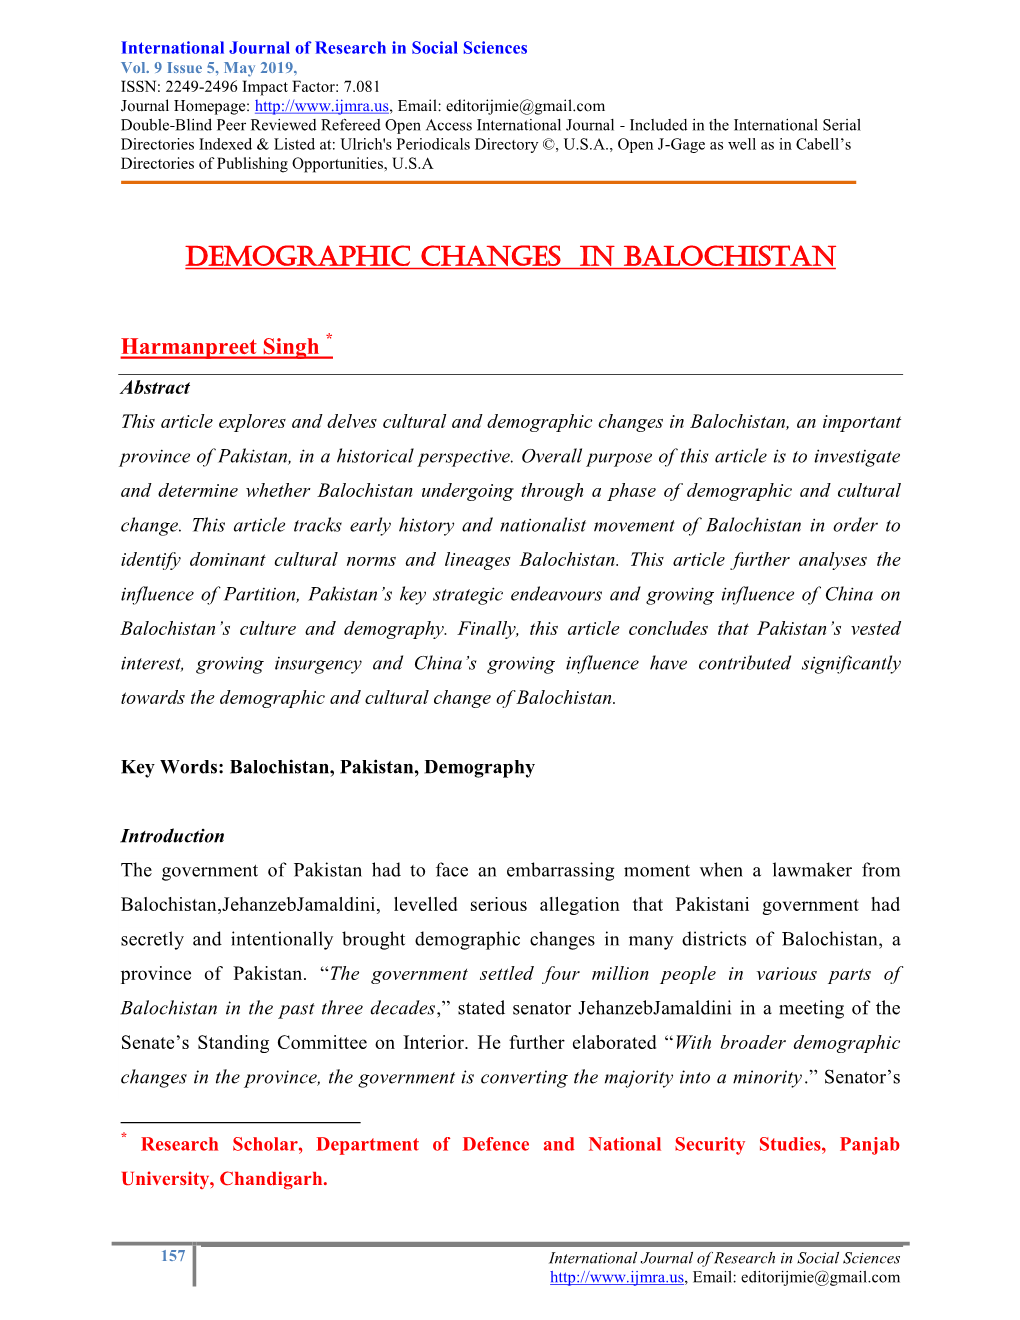 Demographic Changes in Balochistan